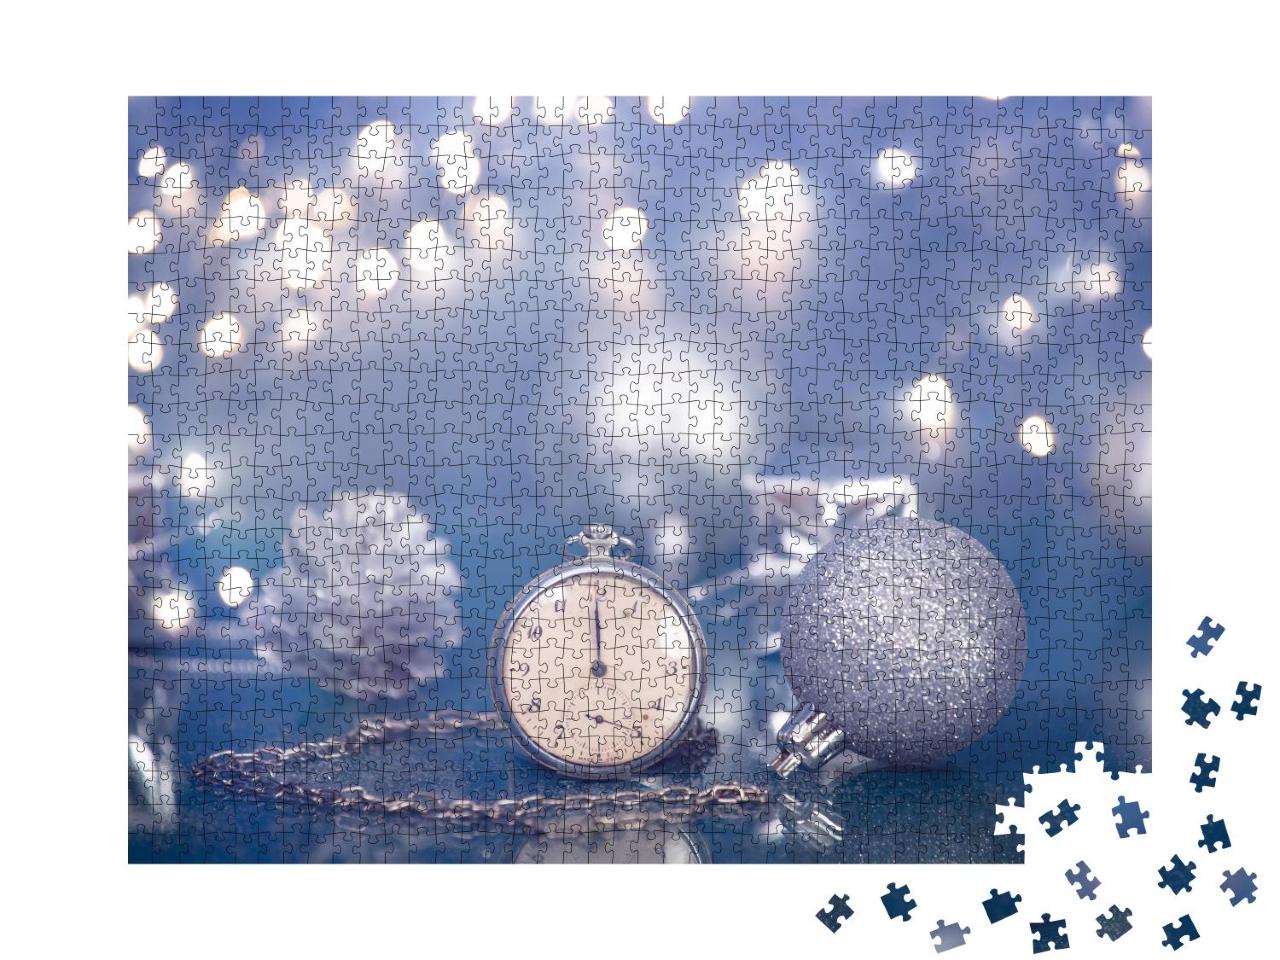 Puzzle 1000 Teile „Silberne Taschenuhr kurz vor Mitternacht und funkelnde Weihnachtsdekoration“